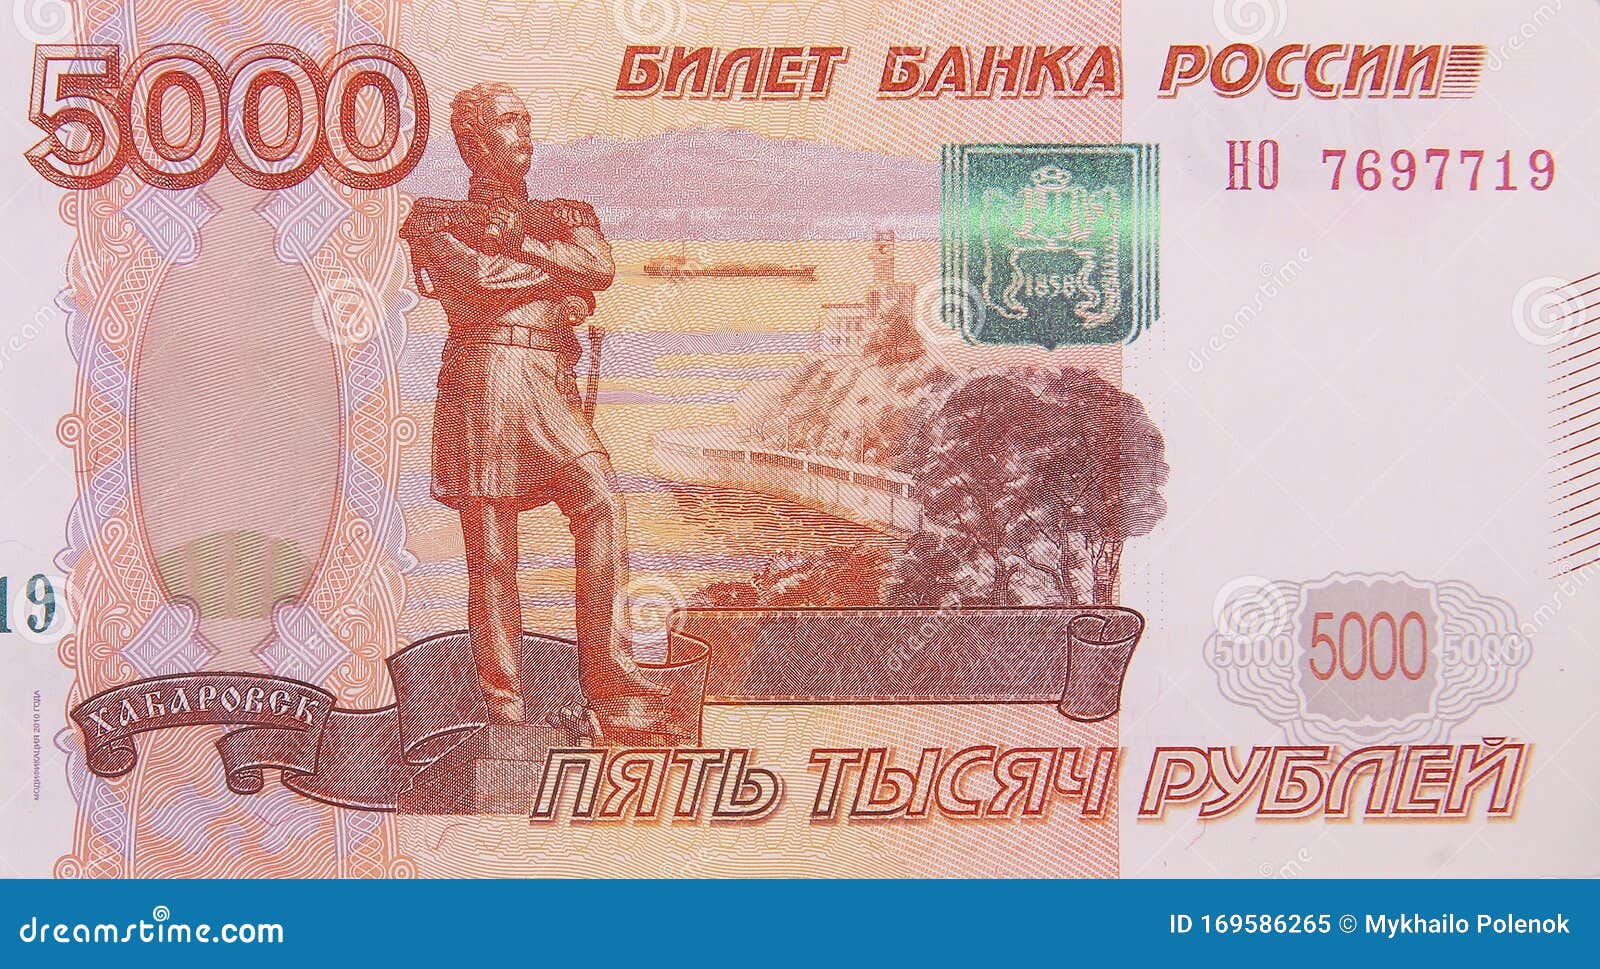 Выиграть 5000 рублей. 1000000 Рублей купюра 2010. Купюра 300 рублей. Номер денег. Фото денежных купюр талисман.